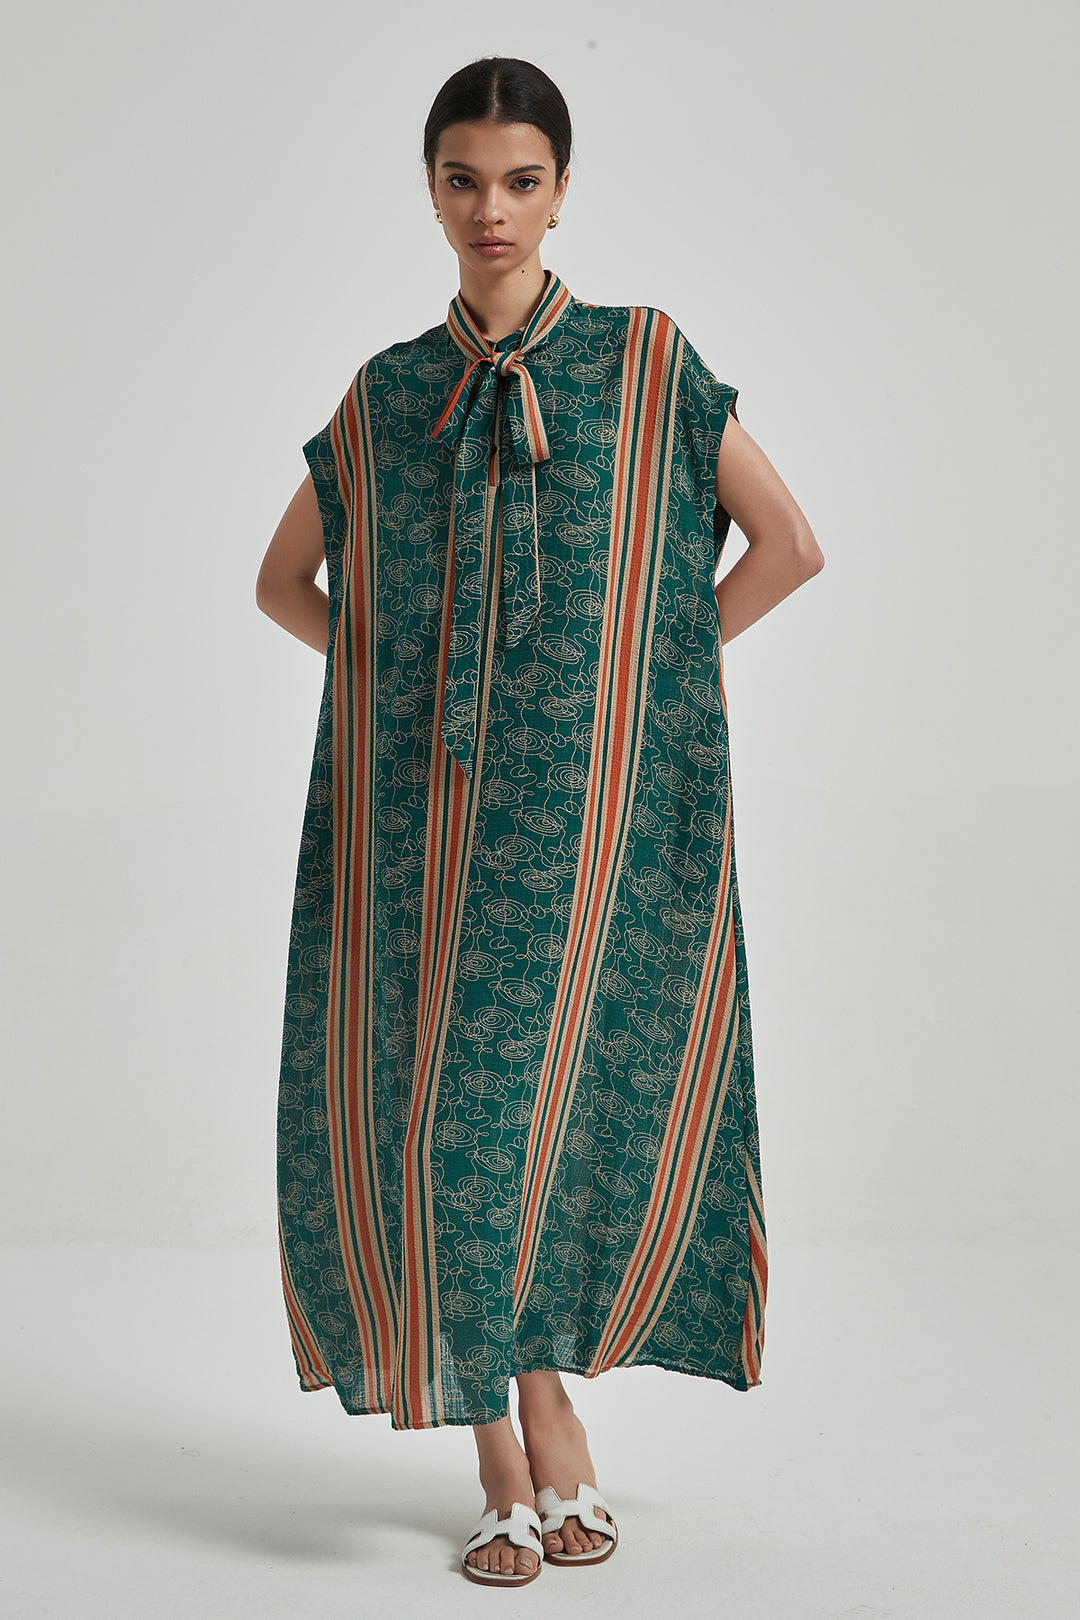 Vestido de seda acogedor con rayas de colores en contraste